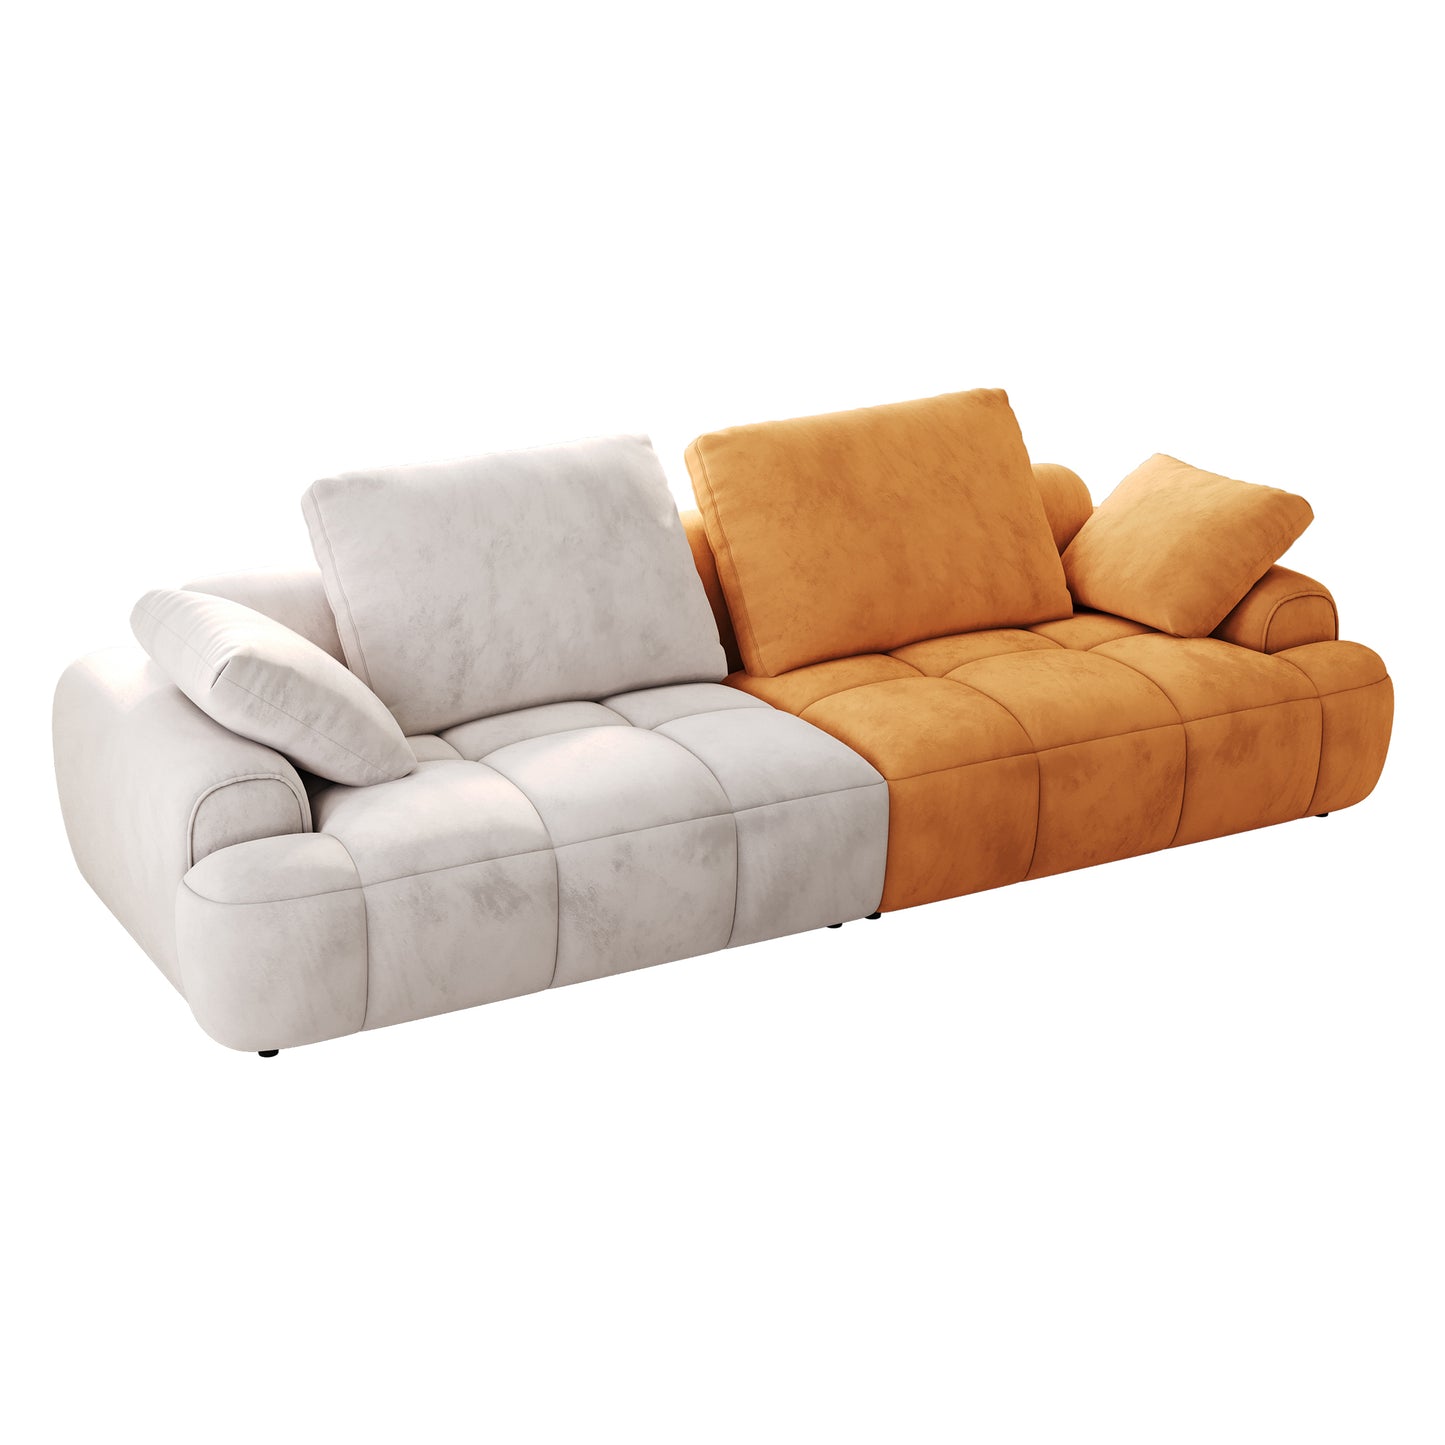 Canapé deux places de grande taille de 86,6 pouces, rembourré moderne, beige associé à un tissu en daim jaune